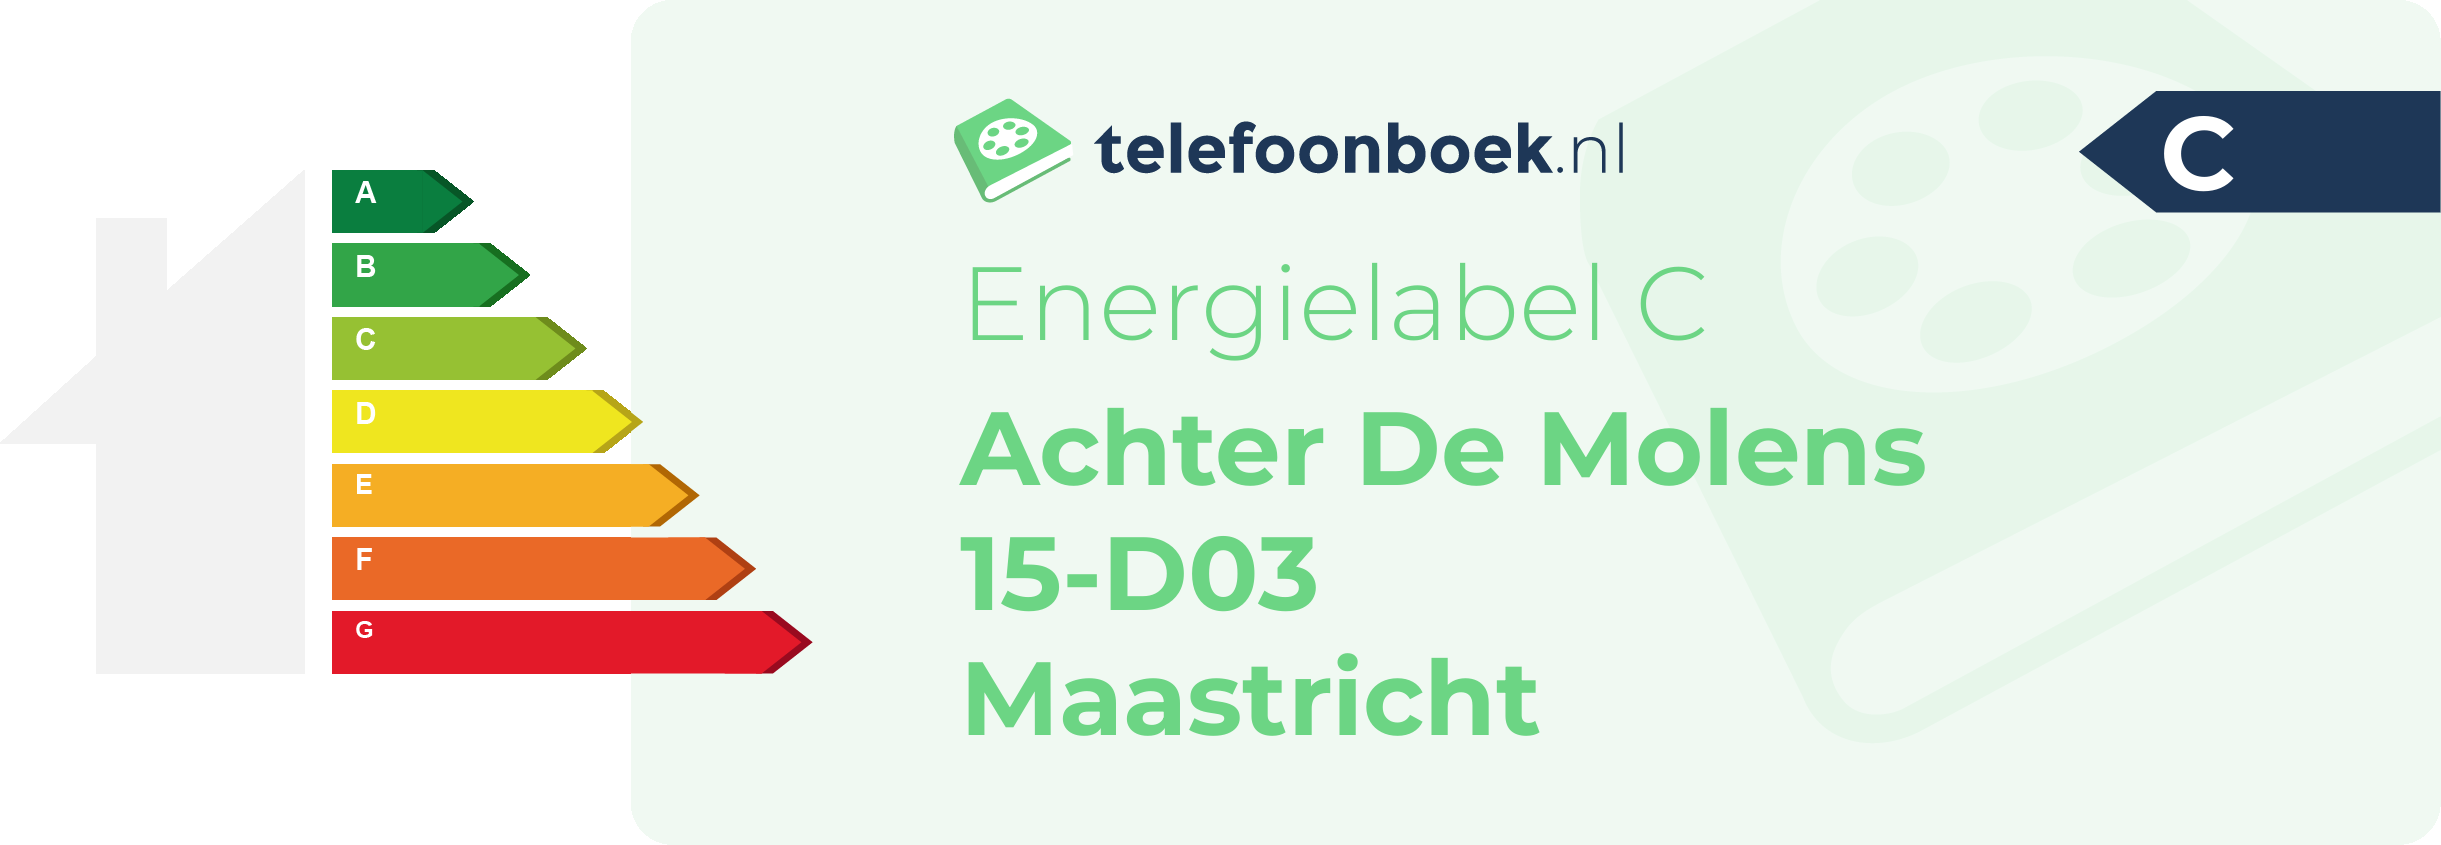 Energielabel Achter De Molens 15-D03 Maastricht